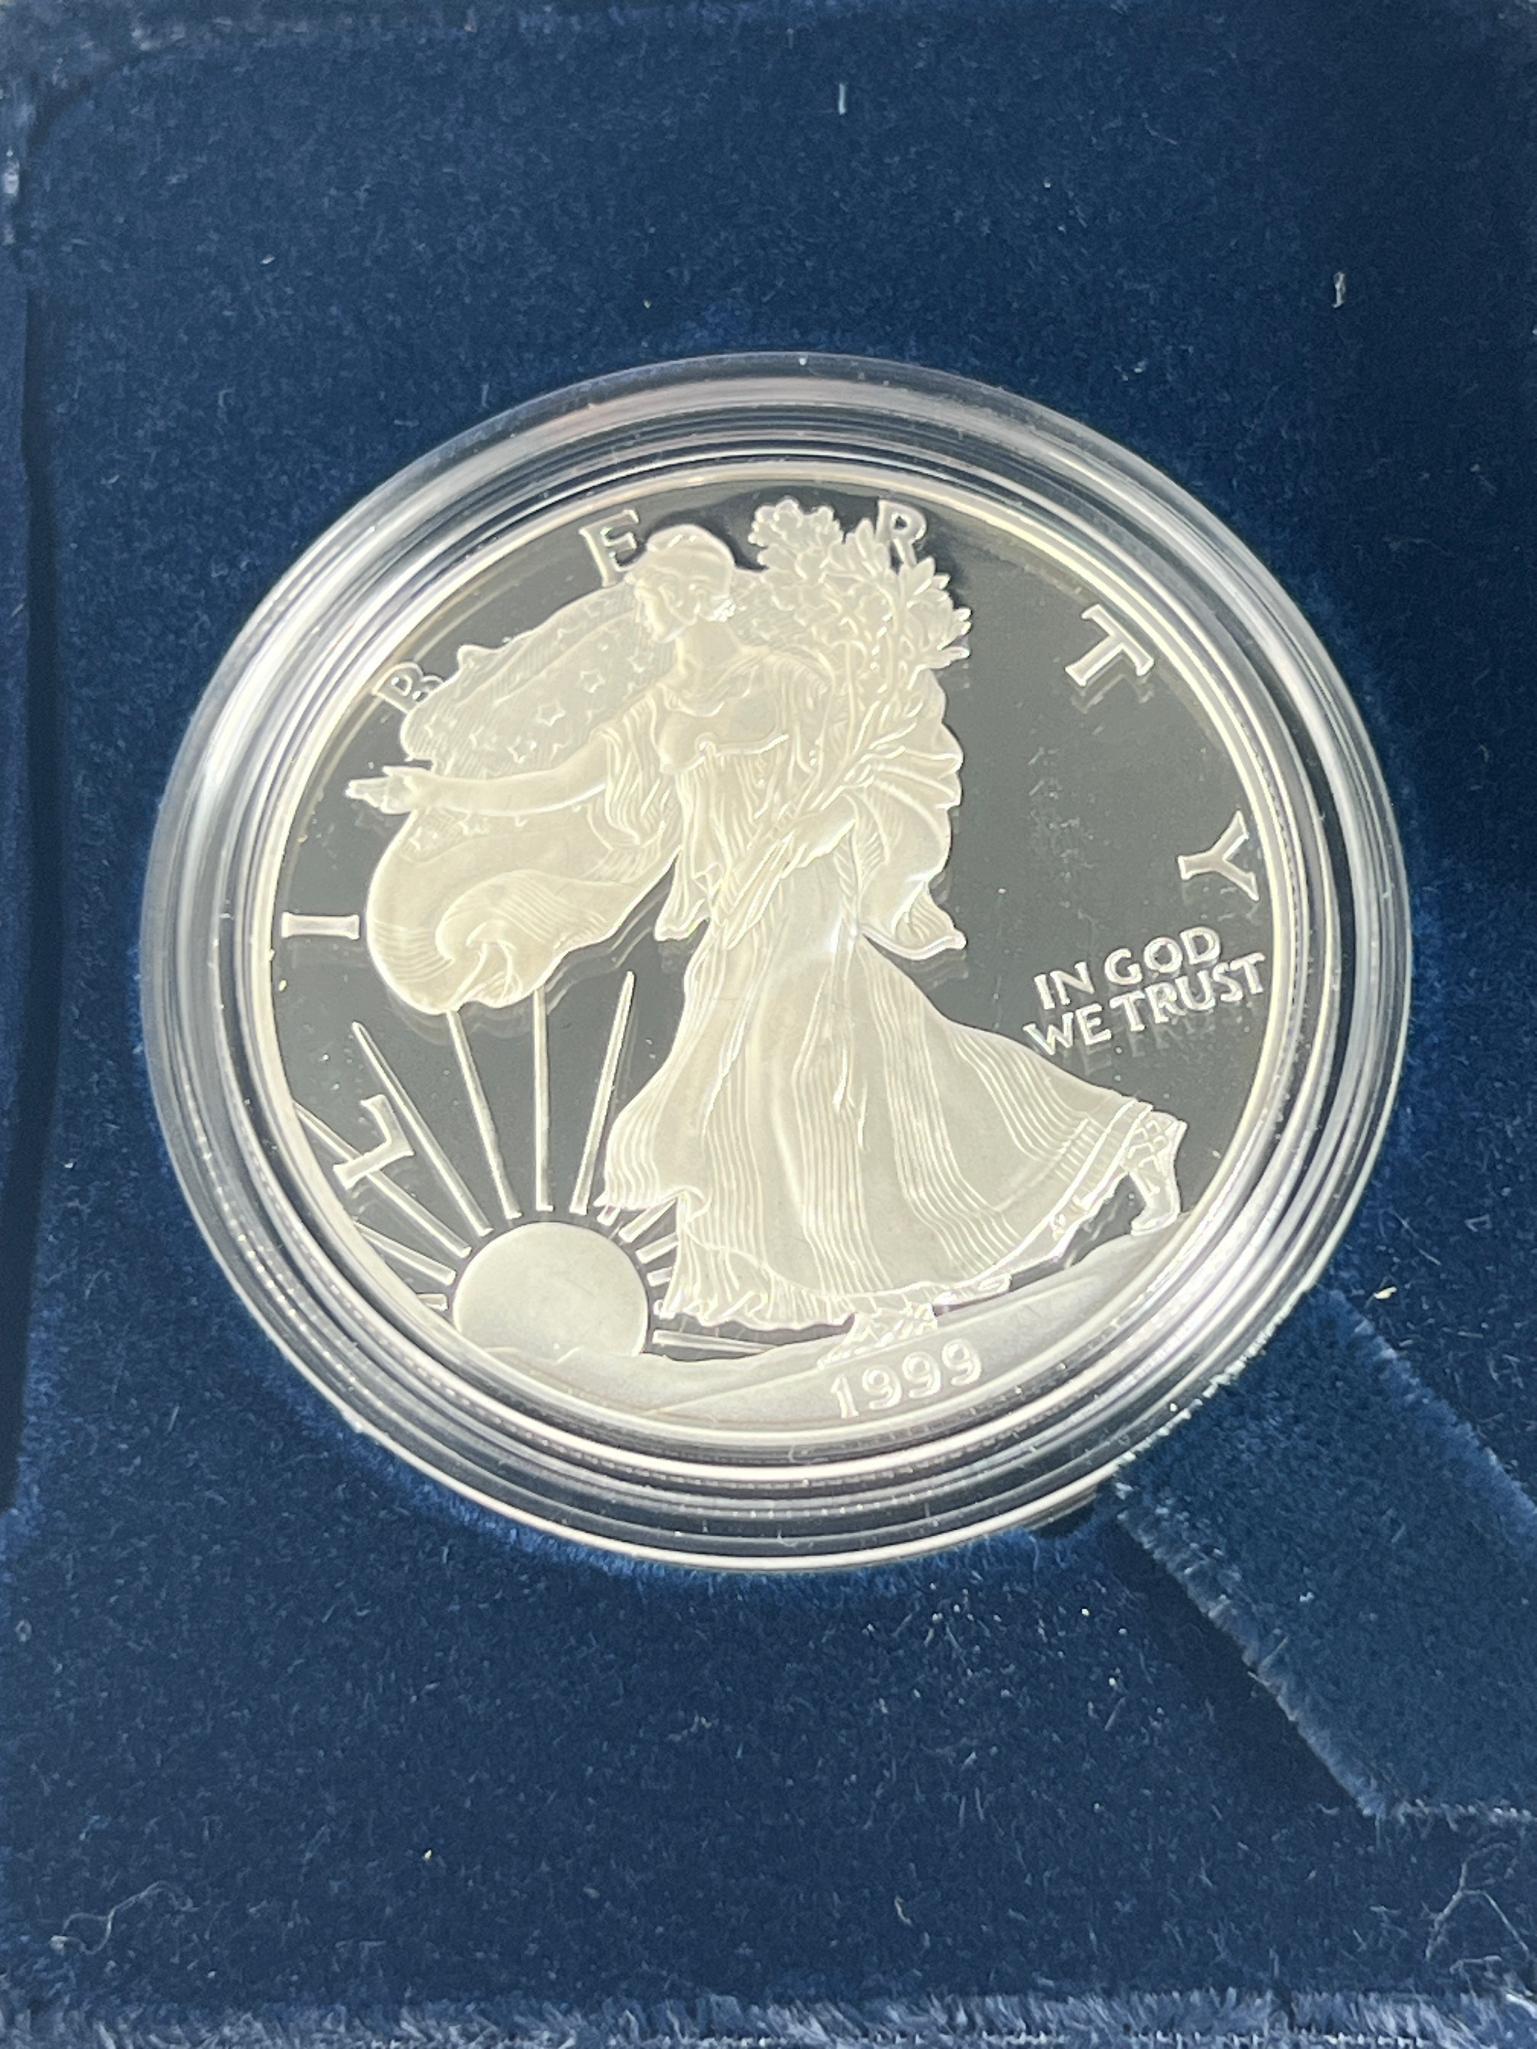 1999-P Proof US Silver Eagle in Mint box, .999 fine silver